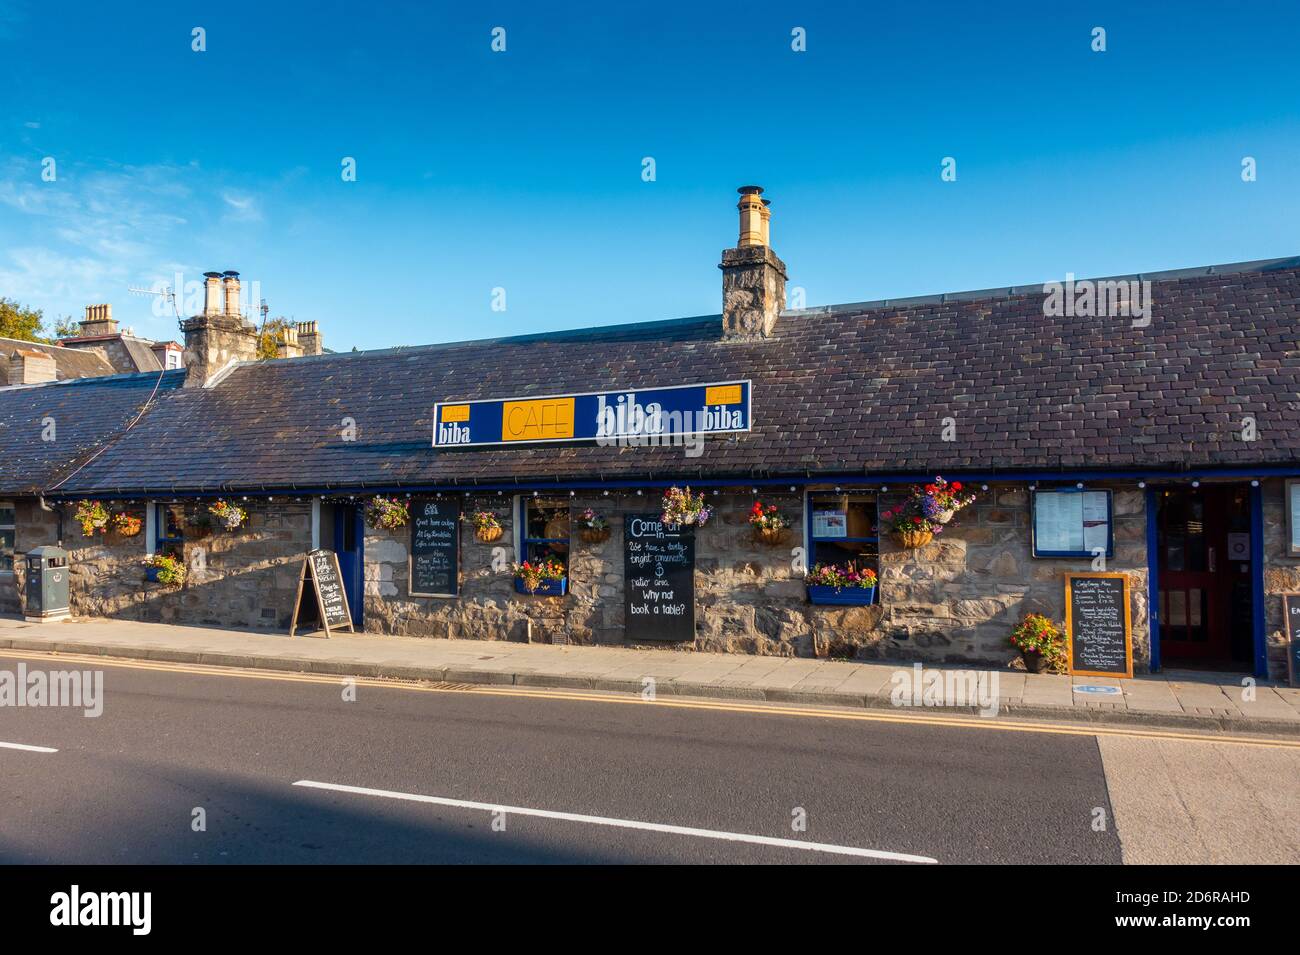 Cafe Biba dans la ville de Pitlochry, Perthshire, Écosse, Royaume-Uni Banque D'Images